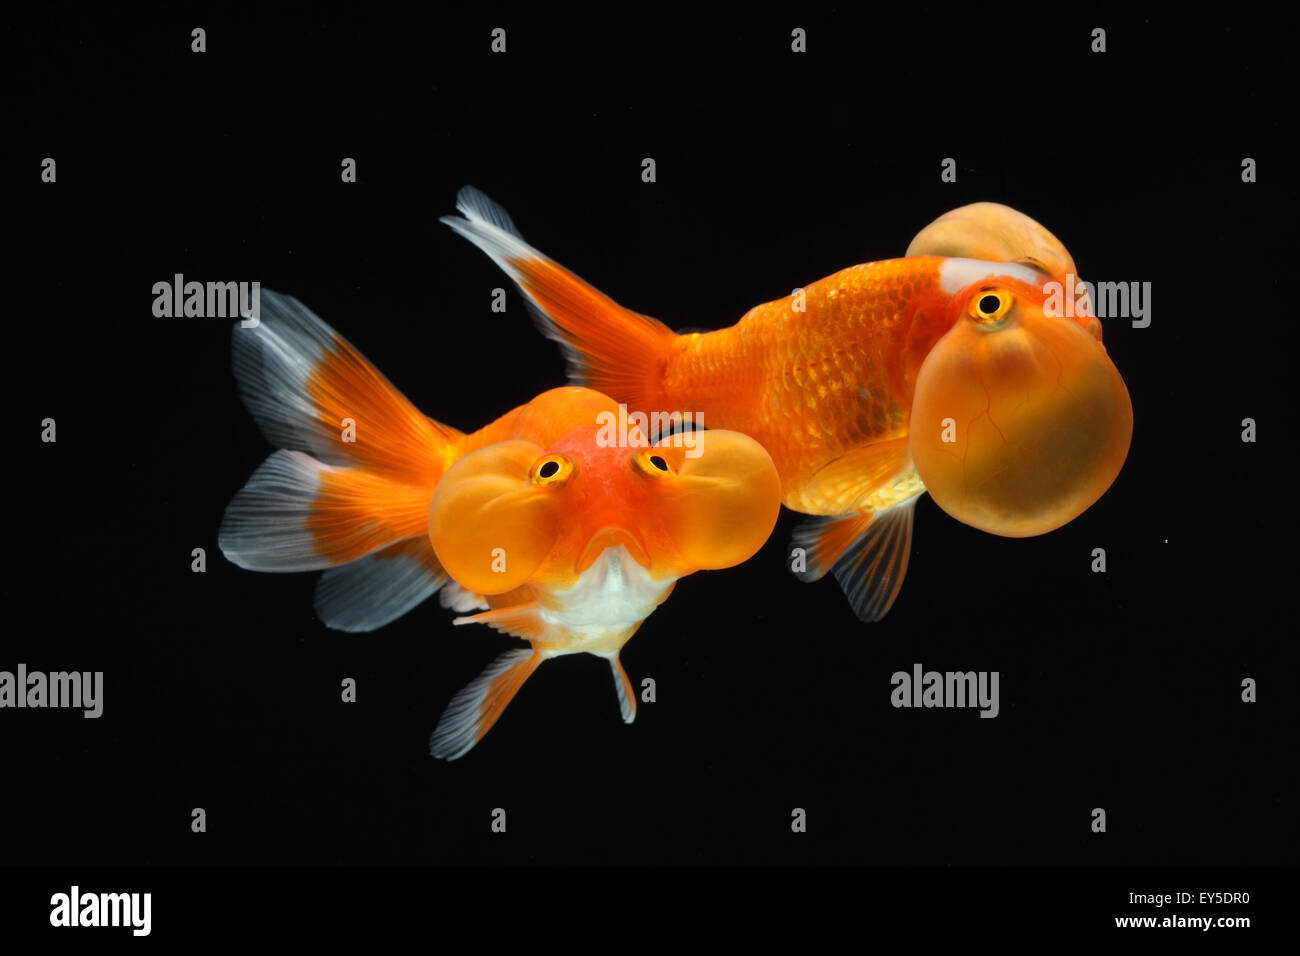 Goldfishes 'Bluble eye' on black background or Uranoscope Stock Photo